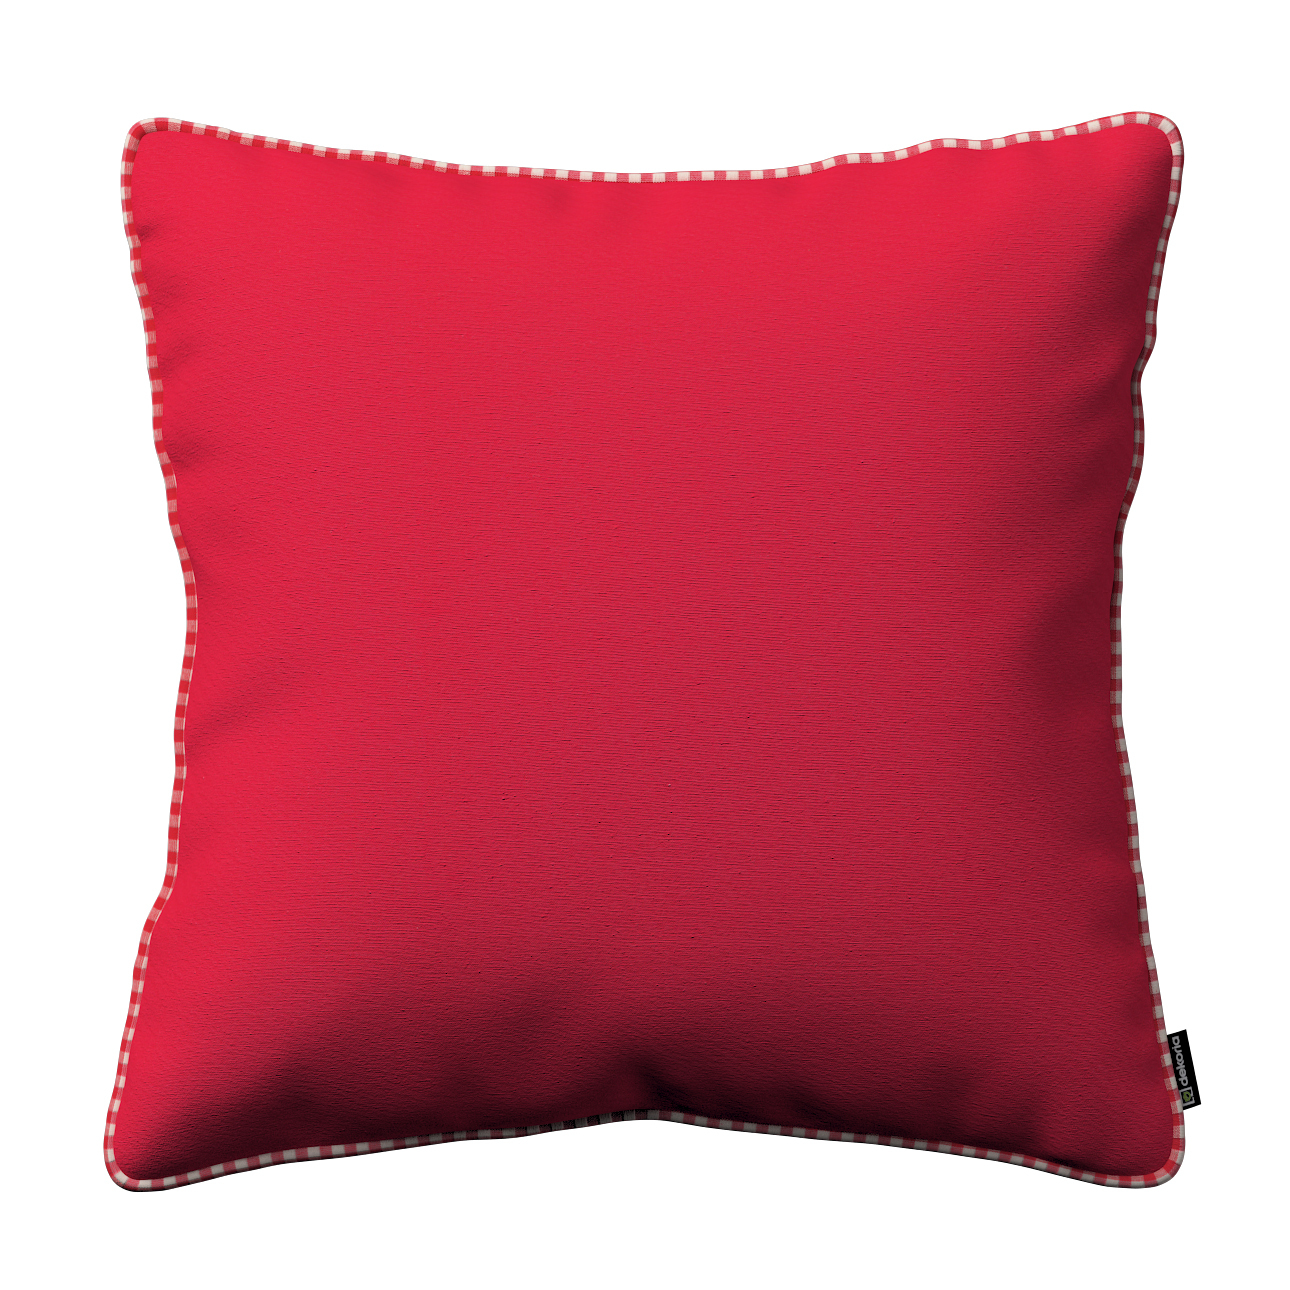 Kissenhülle Gabi mit Paspel, rot, 60 x 60 cm, Quadro (136-19) günstig online kaufen